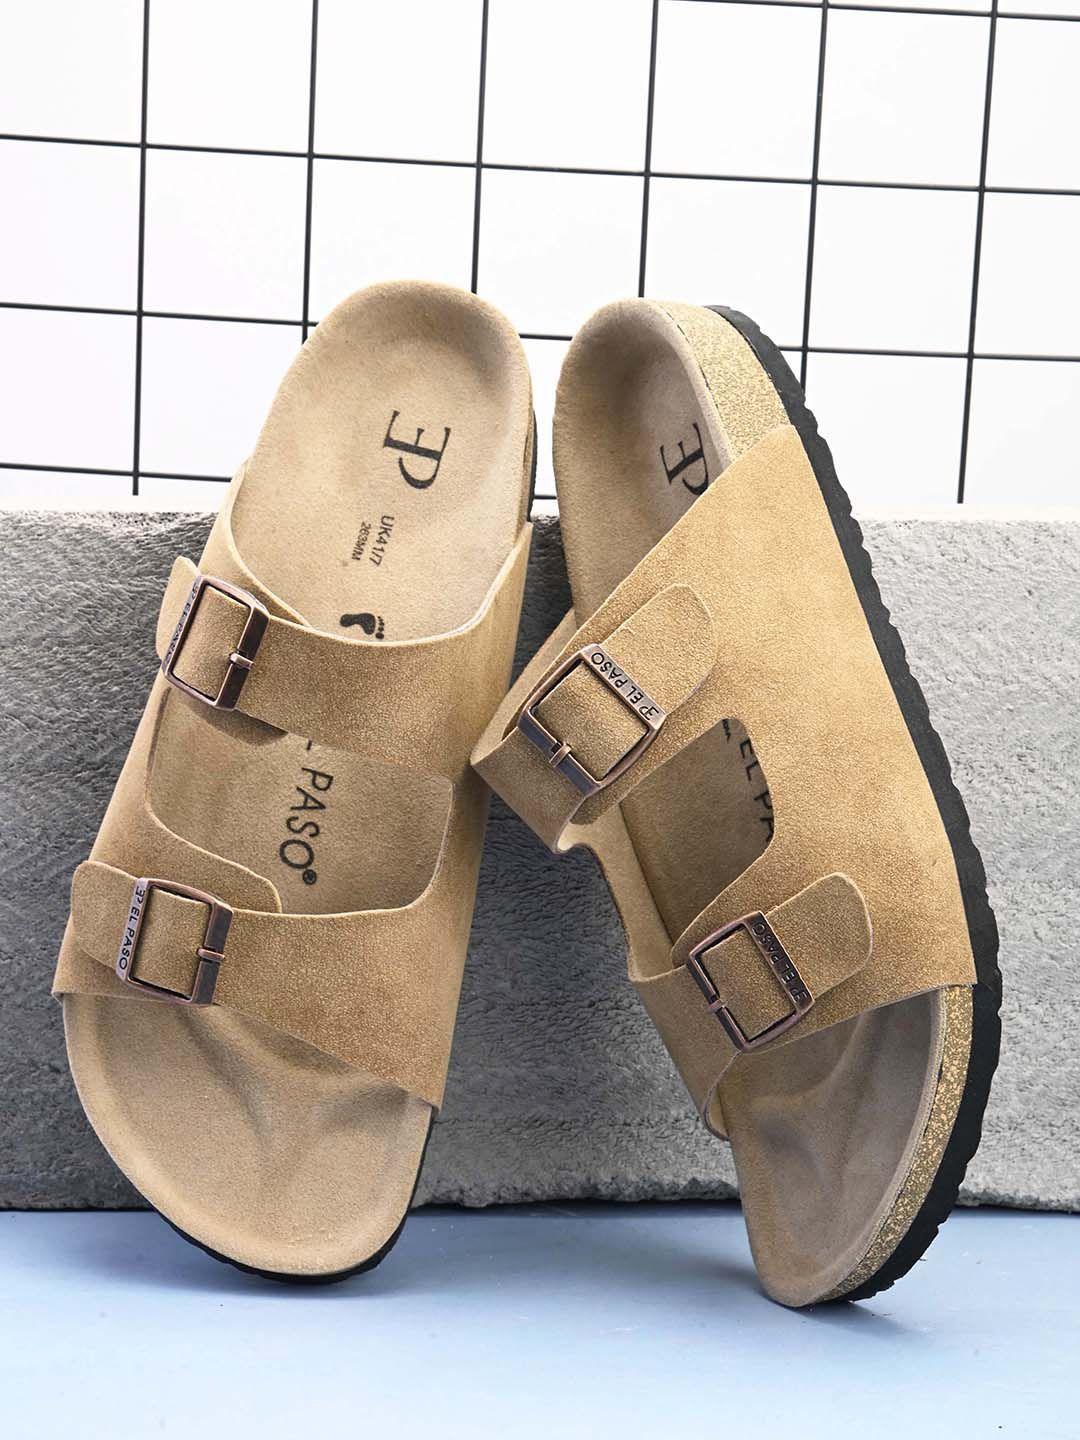 el-paso-men-slip-on-comfort-sandals